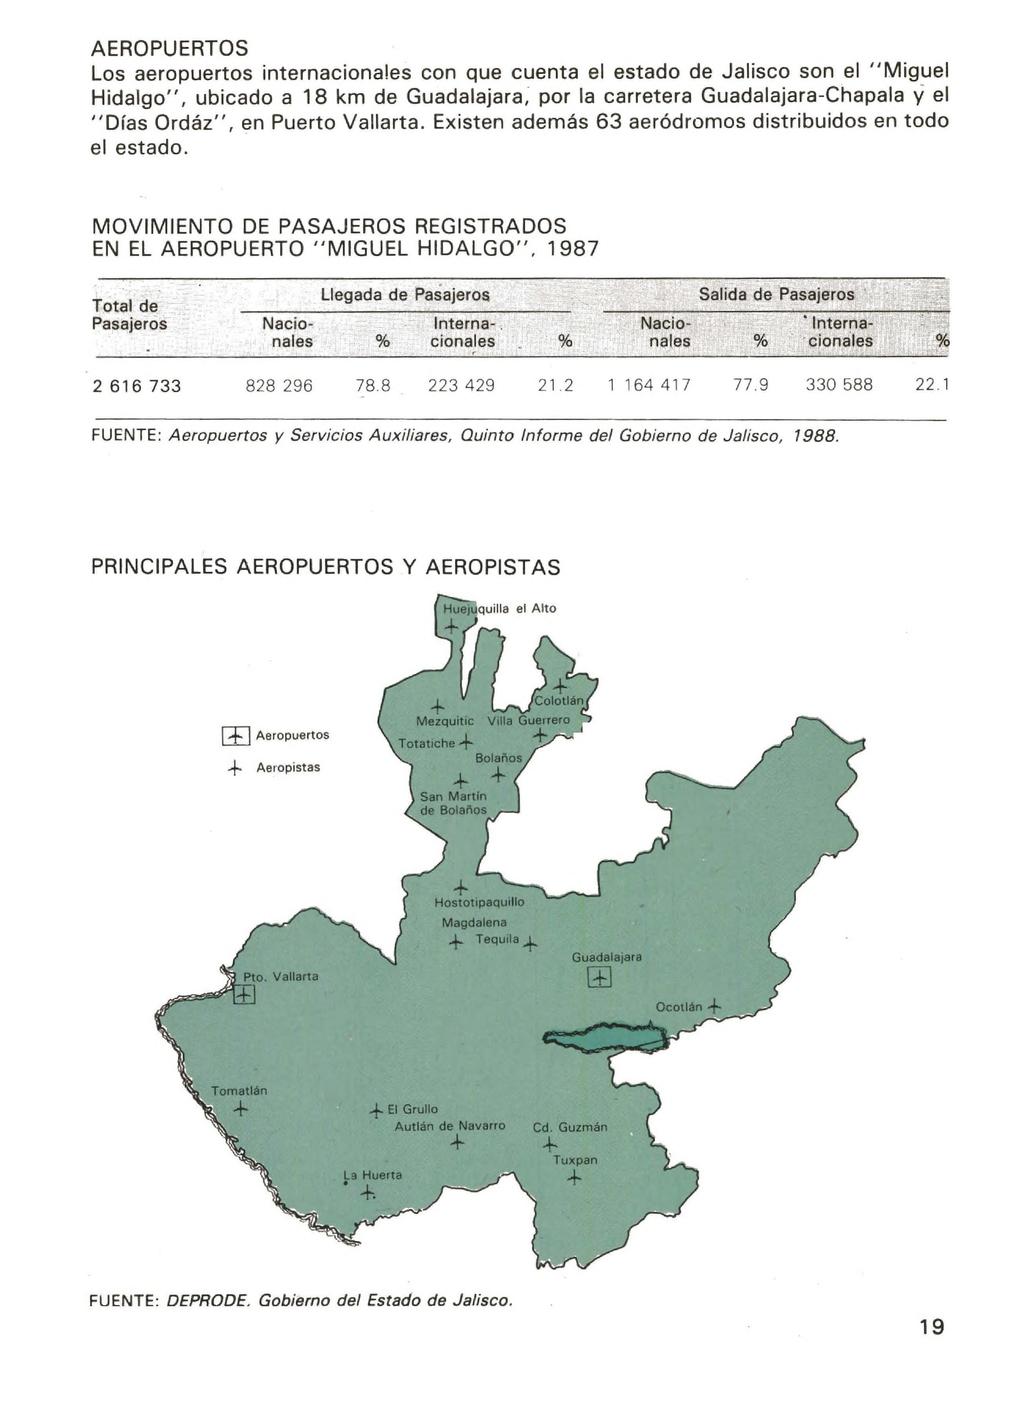 AEROPUERTOS Los aeropuertos internacionales con que cuenta el estado de Jalisco son el "Miguel Hidalgo", ubicado a 18 km de Guadalajara, por la carretera Guadalajara-Chapala y el "Días Ordáz", en